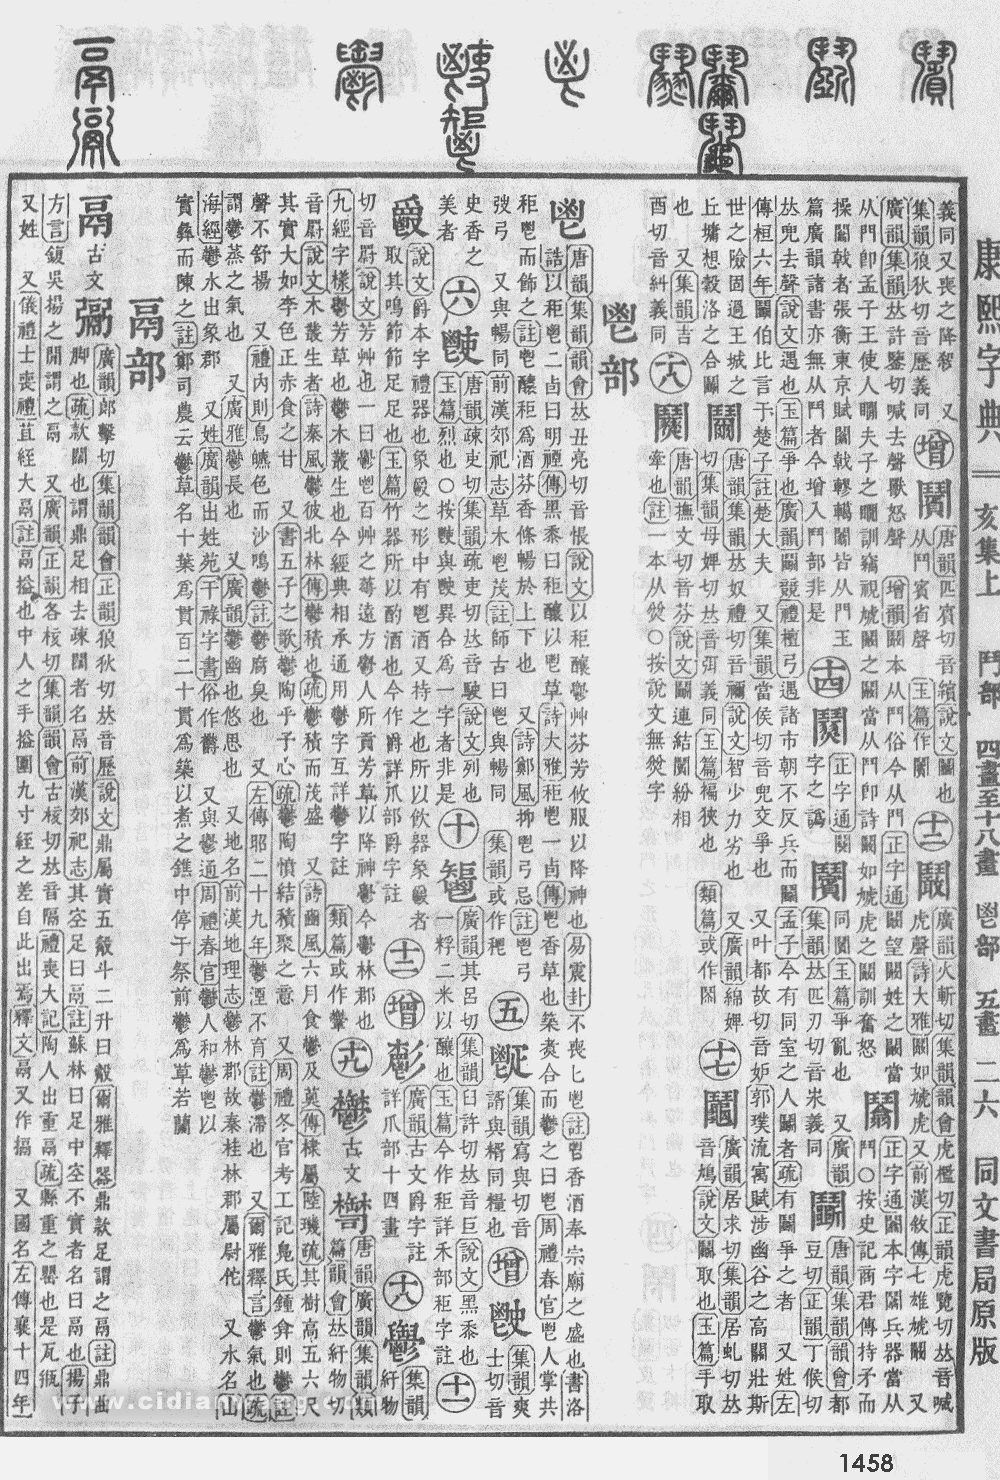 康熙字典掃描版第1458頁